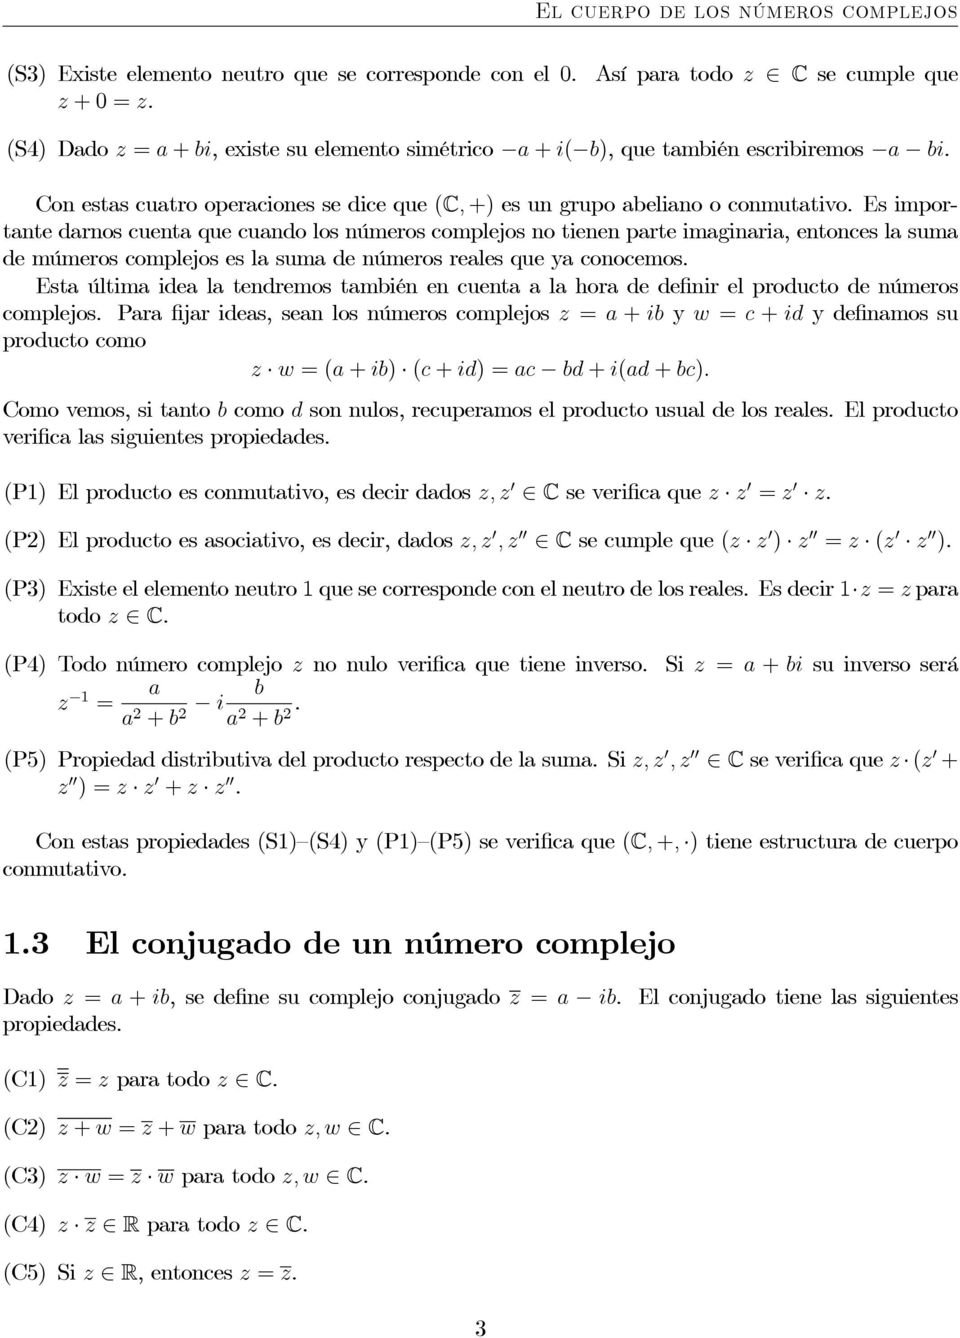 Con estas cuatro operaciones se dice que (C, +) es un grupo abeliano o conmutativo.